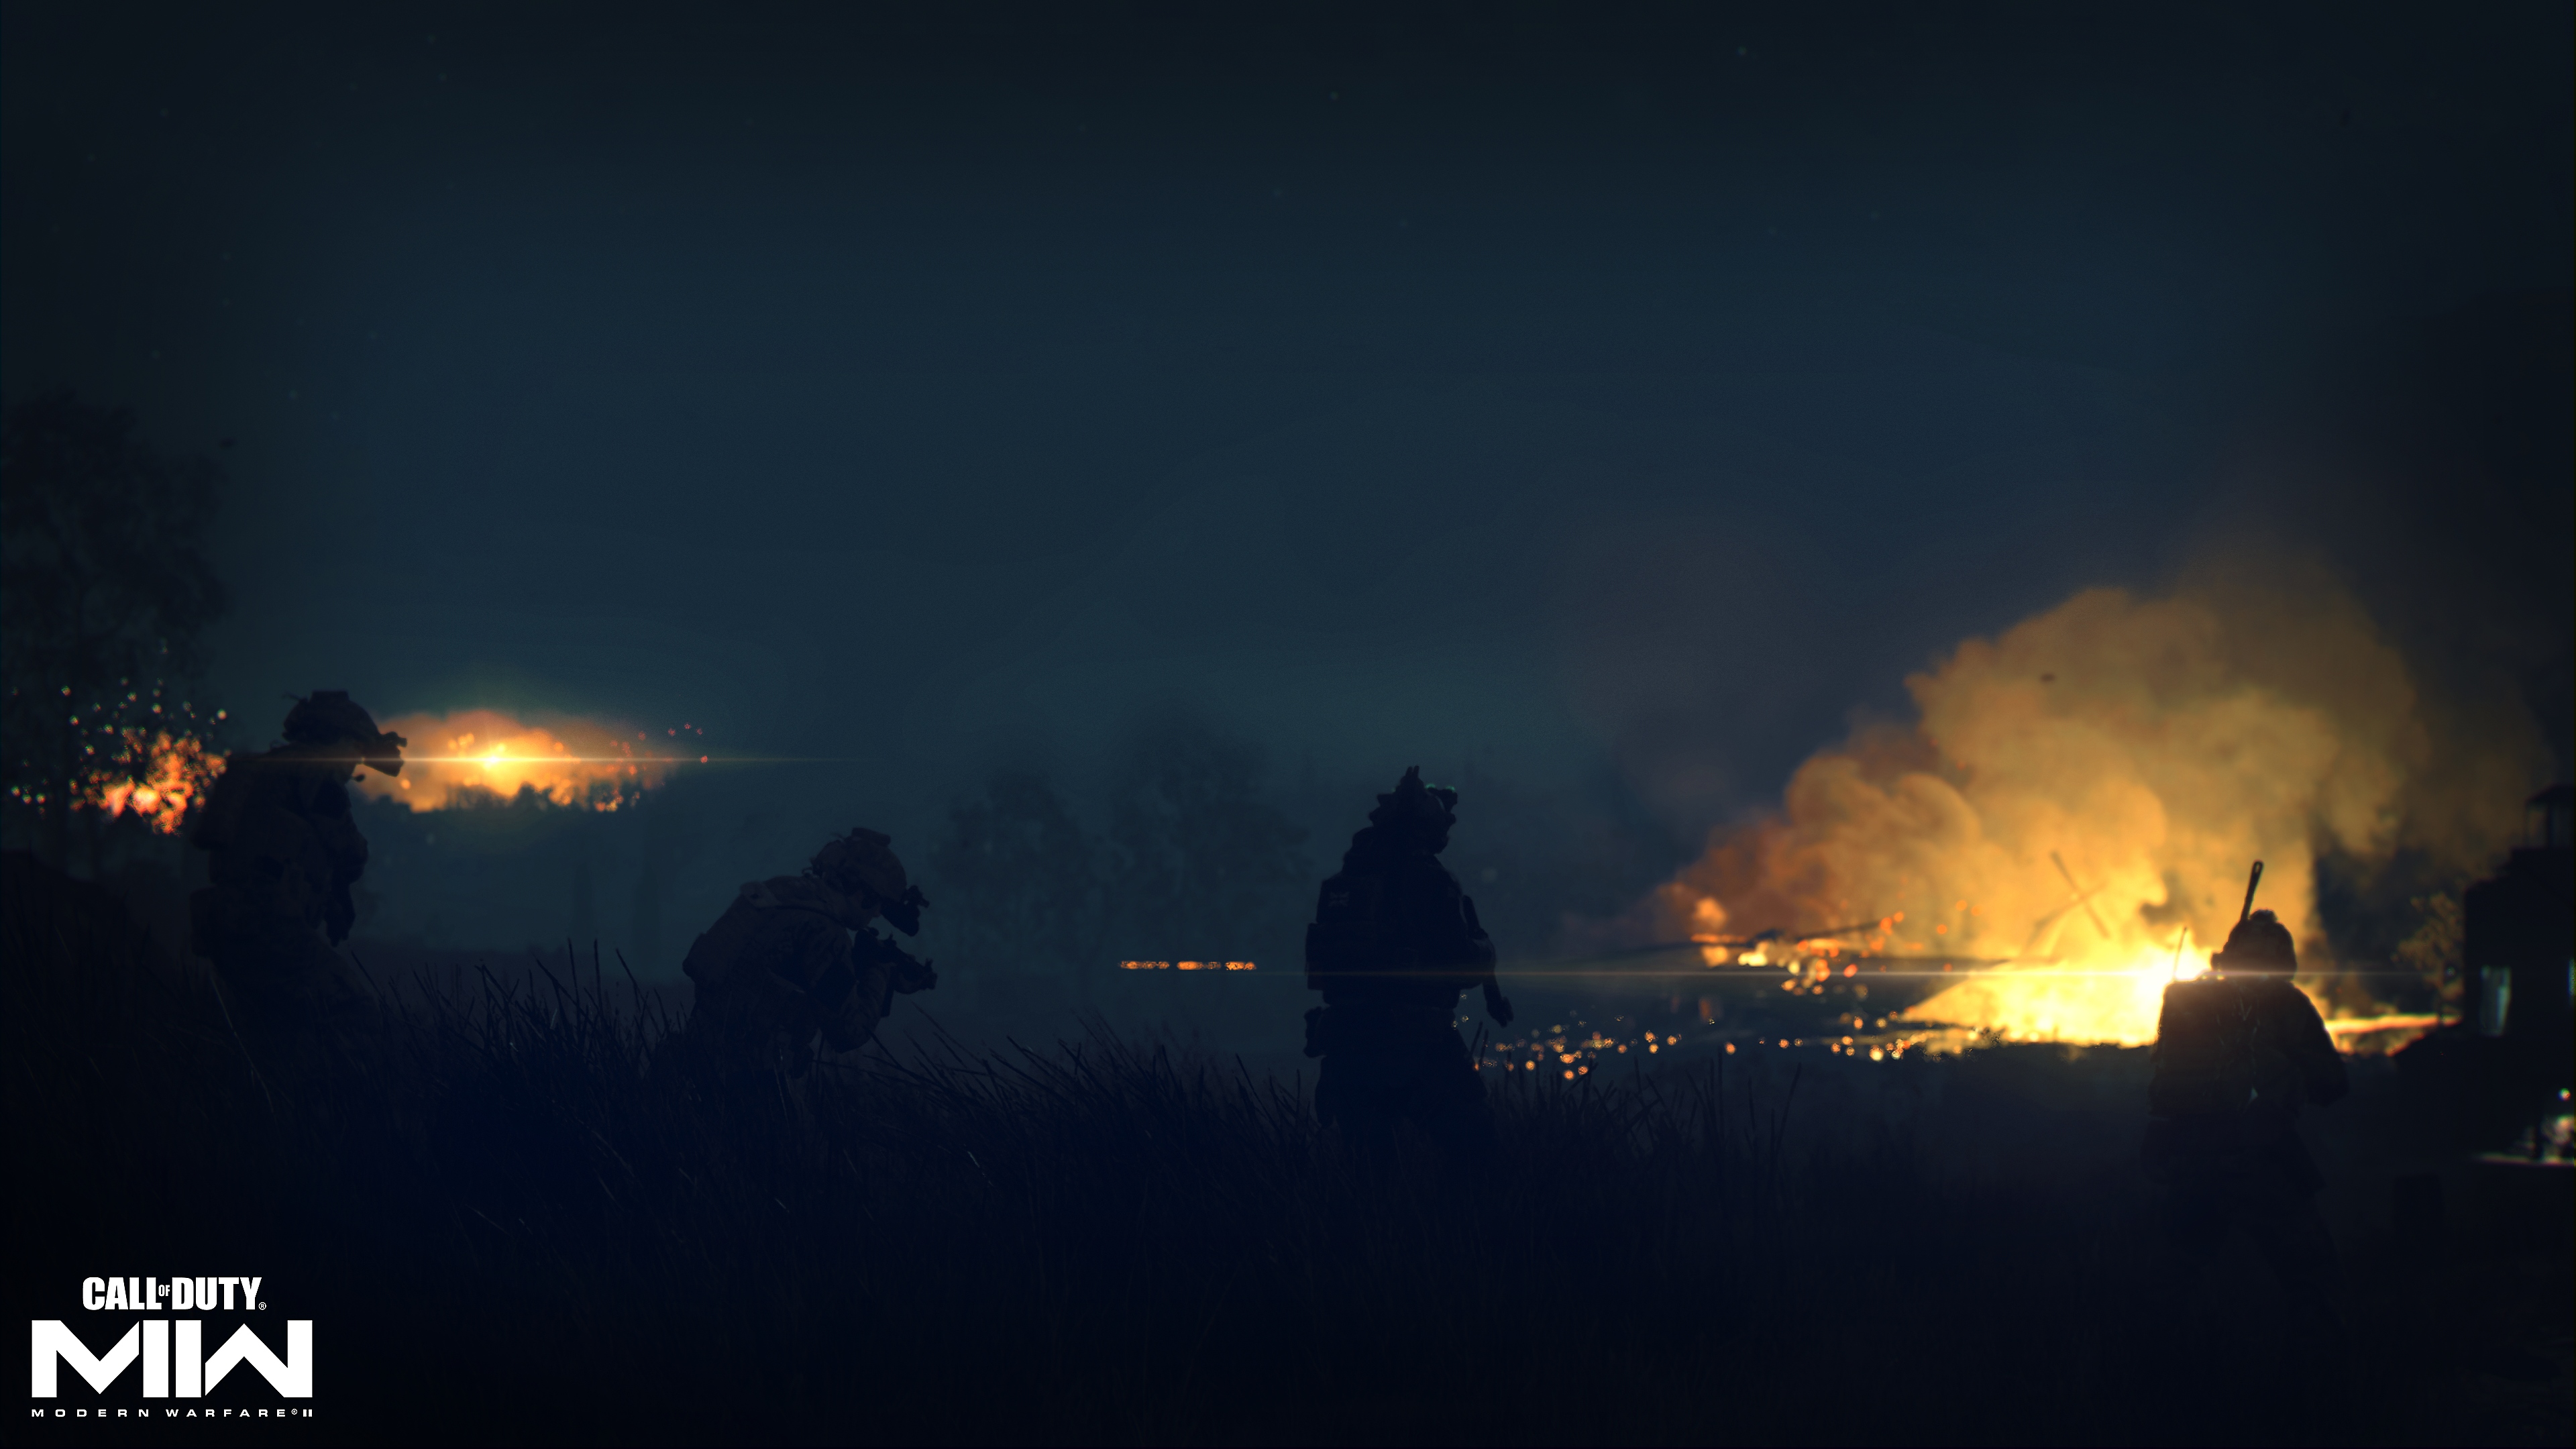 Call of Duty: Modern Warfare II (2022) - captura de tela mostrando um incêndio distante em uma paisagem escura